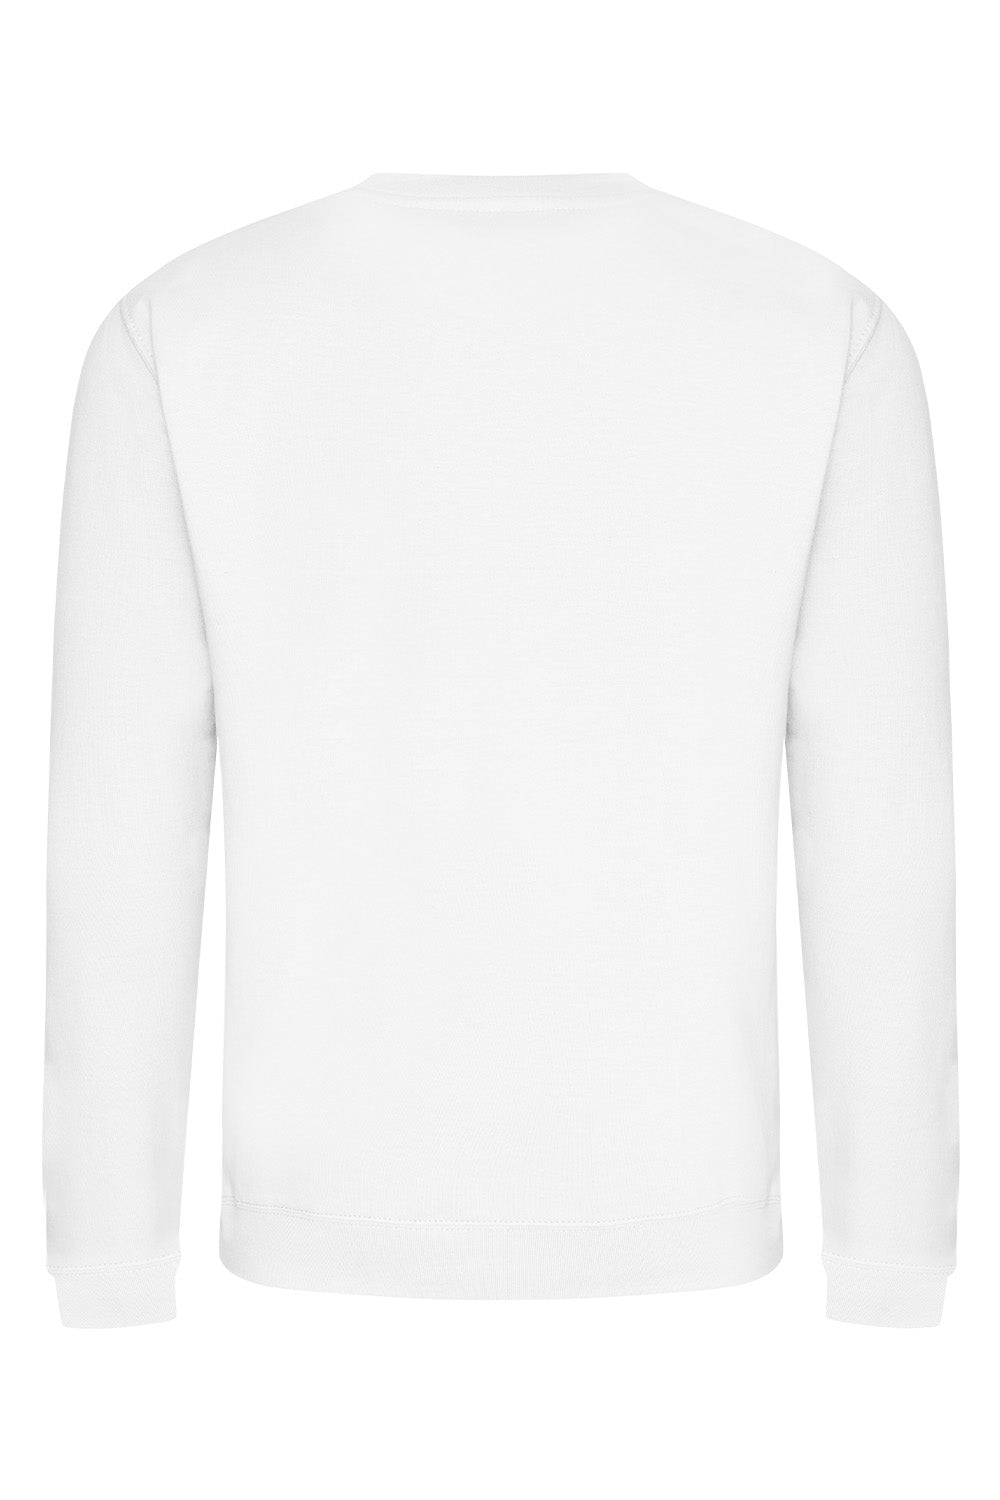 Palm Springs Teddy Sweatshirt In Arctic White (Custom Pack)